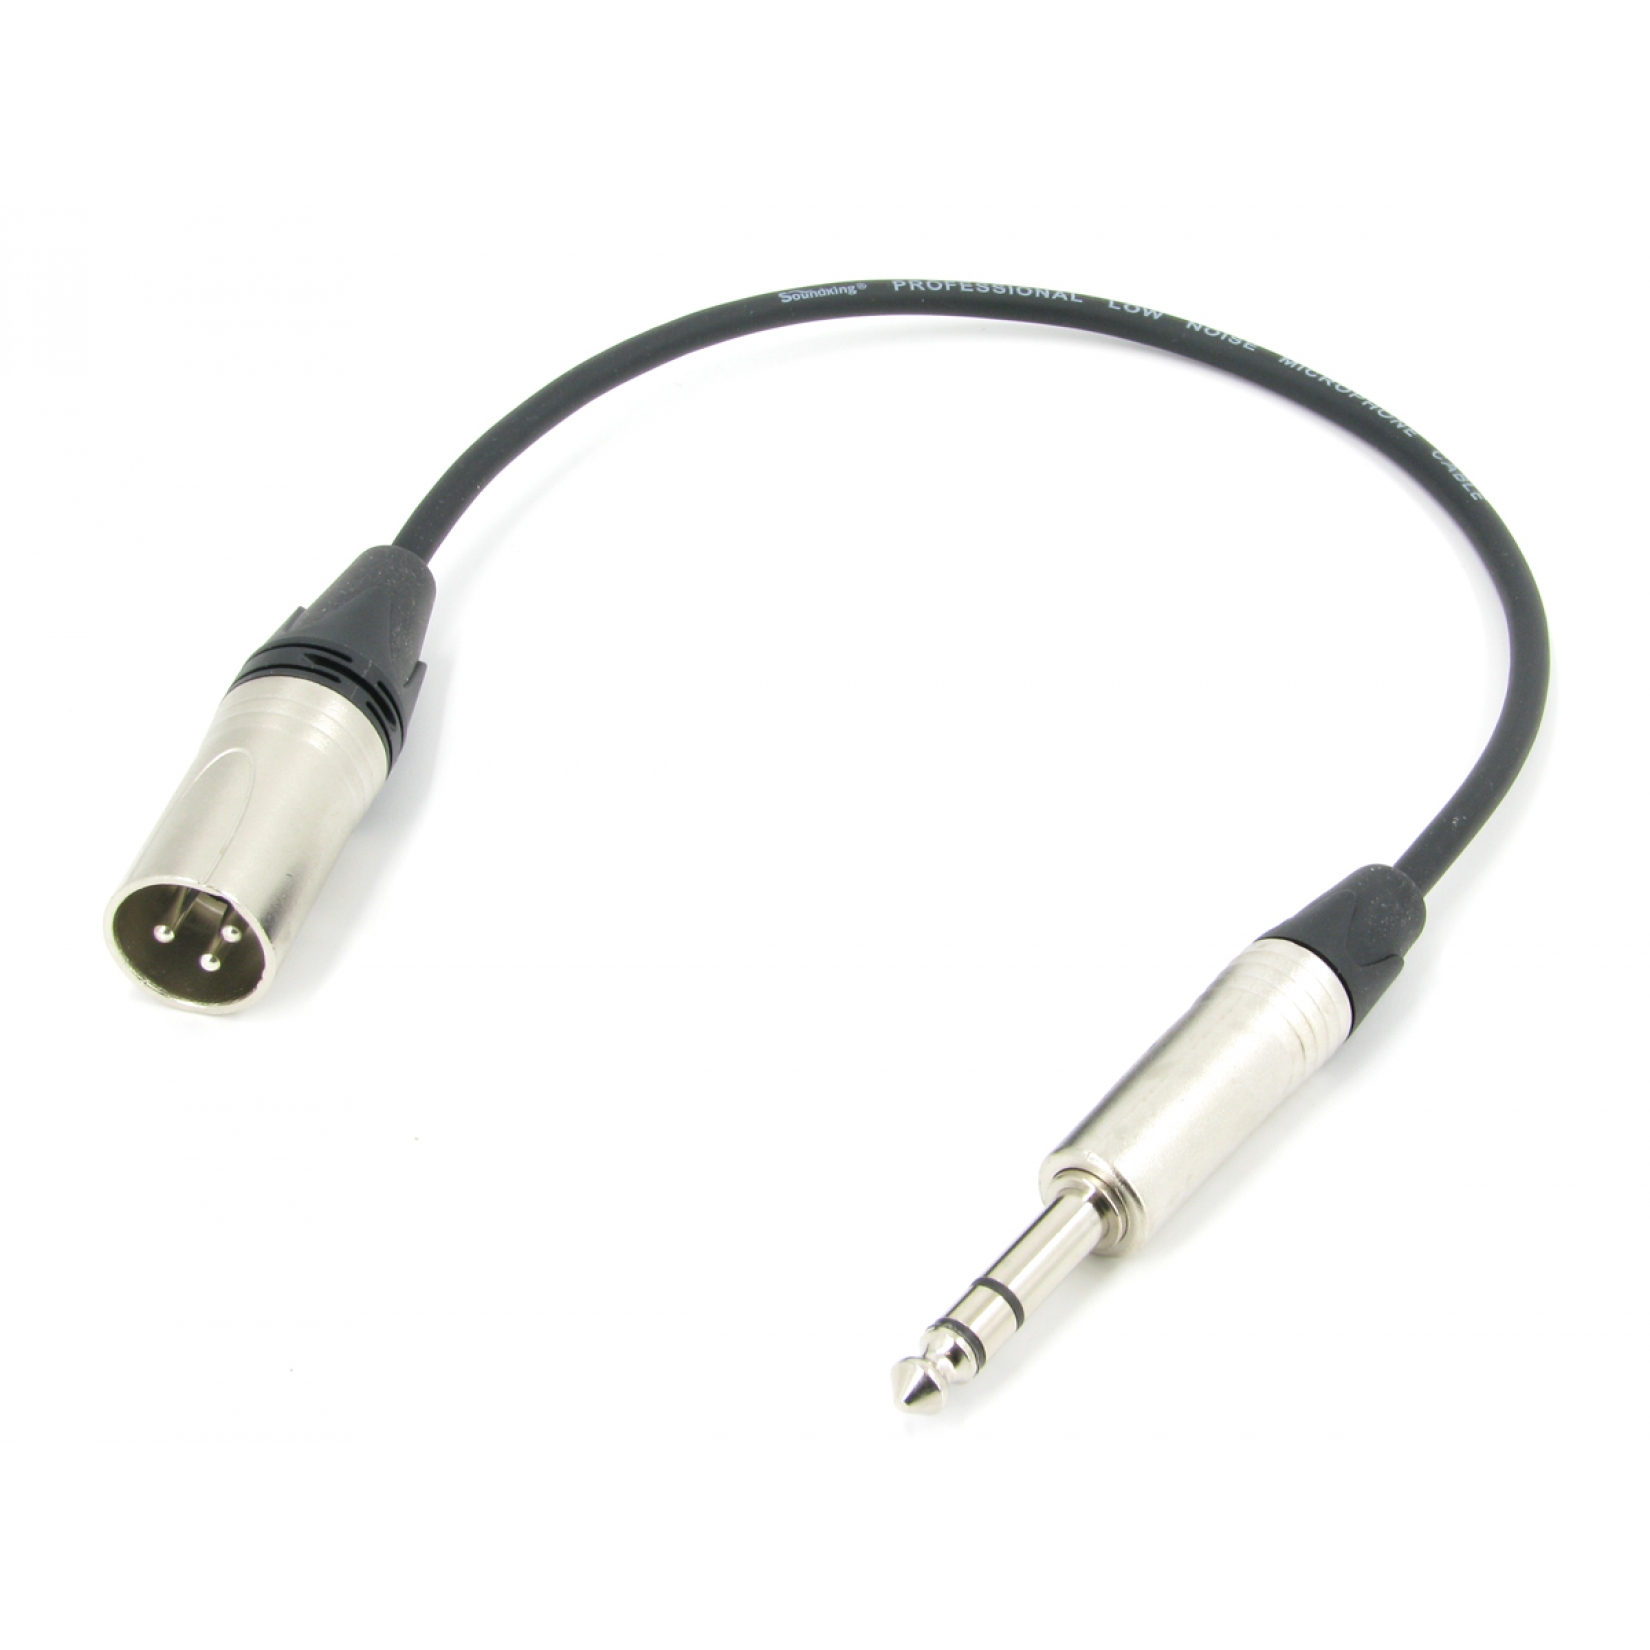 Аудио кабель JACK 6.3 - XLR (M) межблочный, симметричный, балансный, длина 0,5 метра